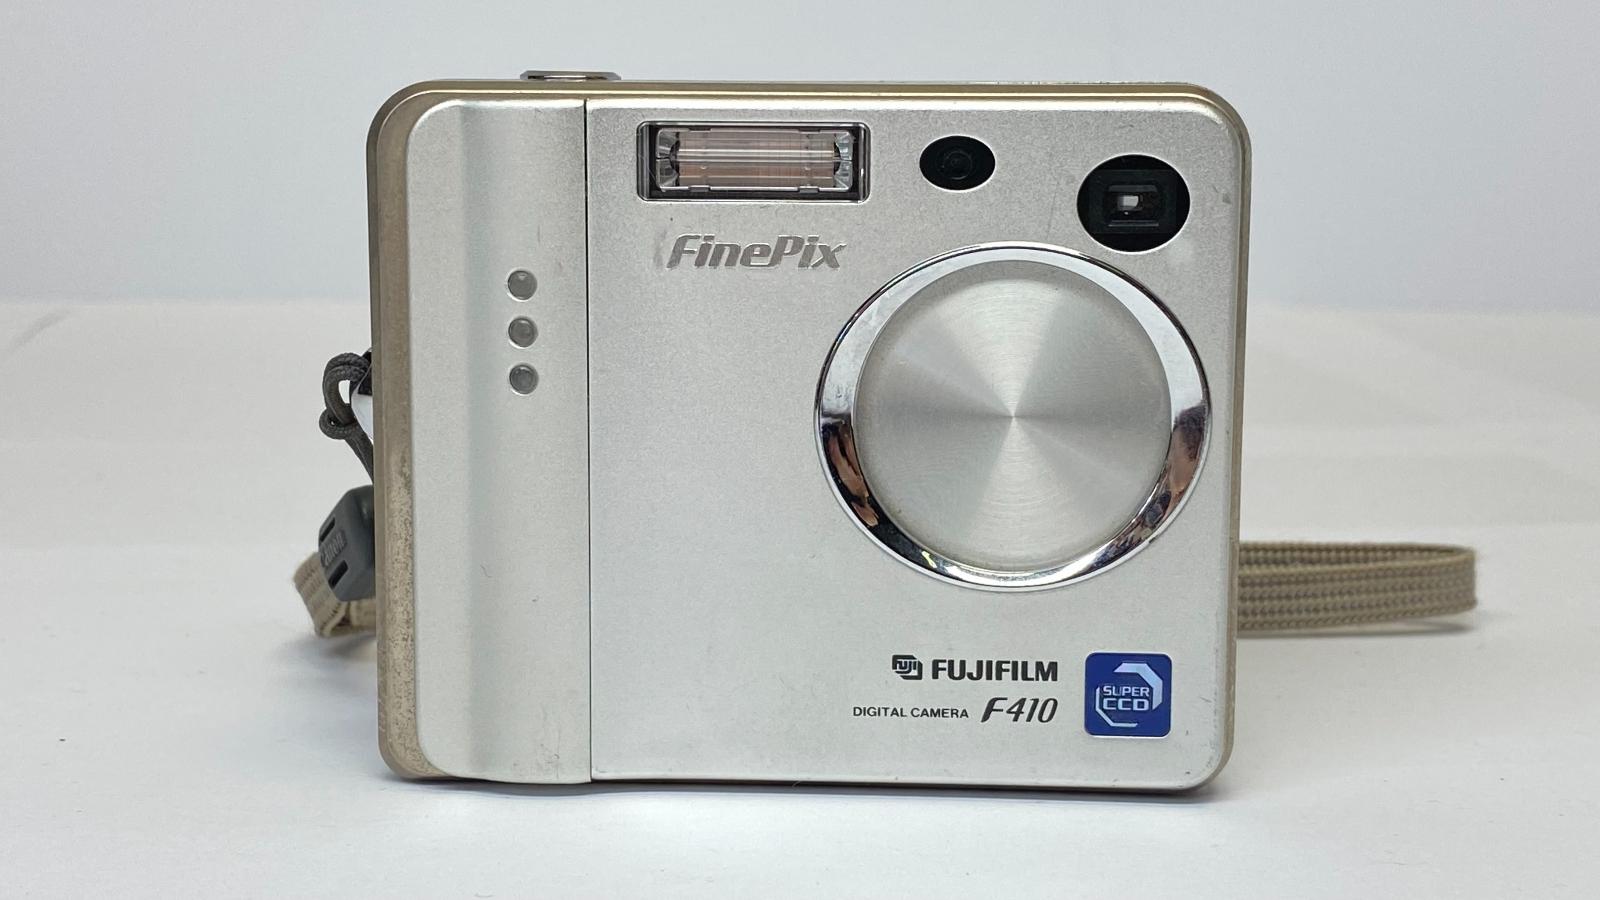 boezem knoflook zak Nefunkční Fujifilm FinePix F410 fotoaparát od 1kč | Aukro